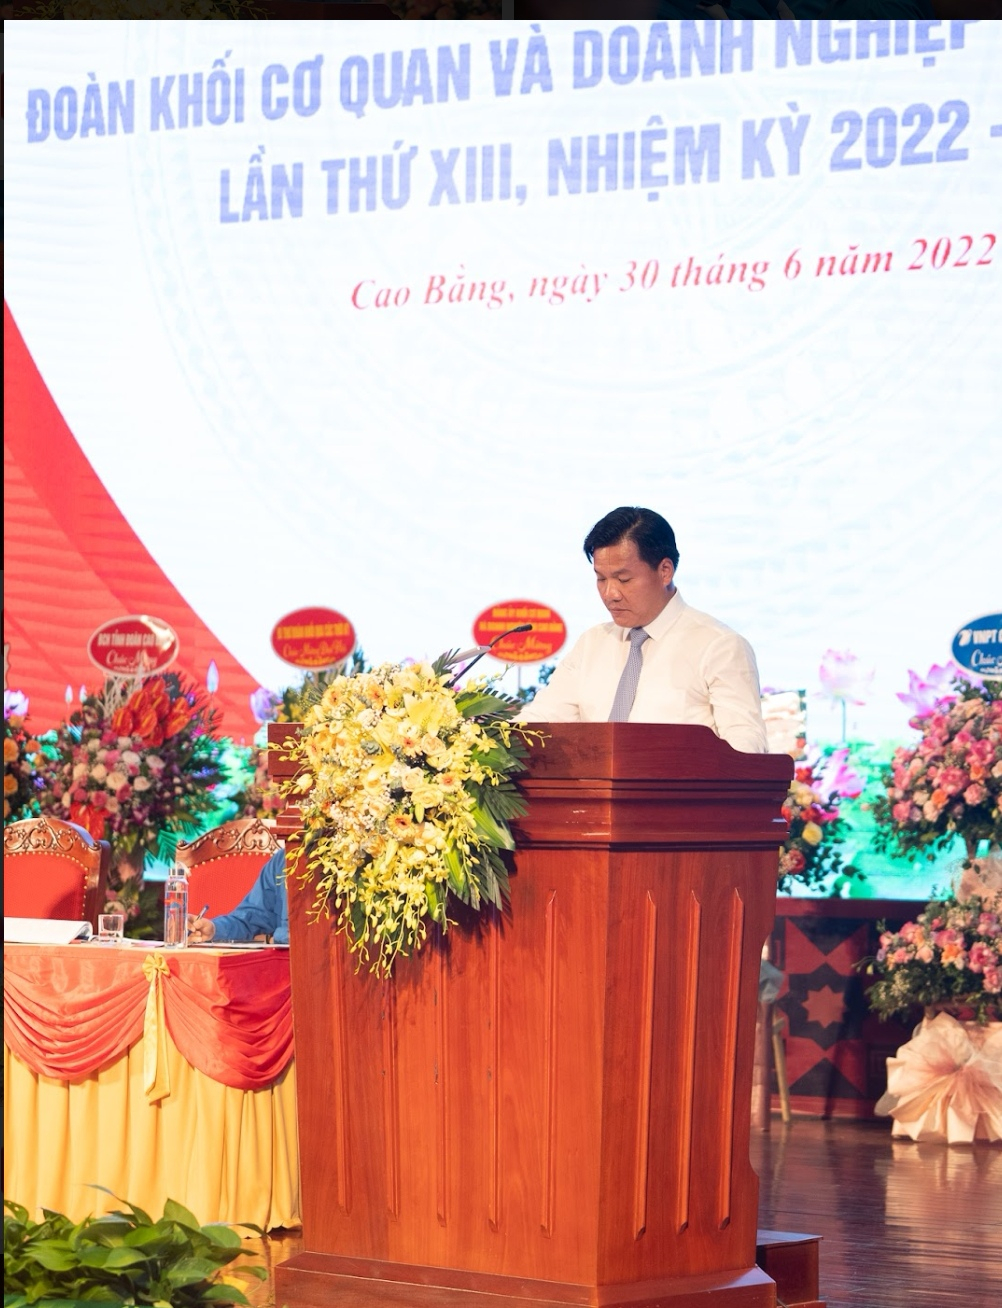 Đ/c Trịnh Trường Huy – Bí thư Đảng ủy Khối cơ quan và doanh nghiệp tỉnh giải đáp thắc mắc của đoàn viên.